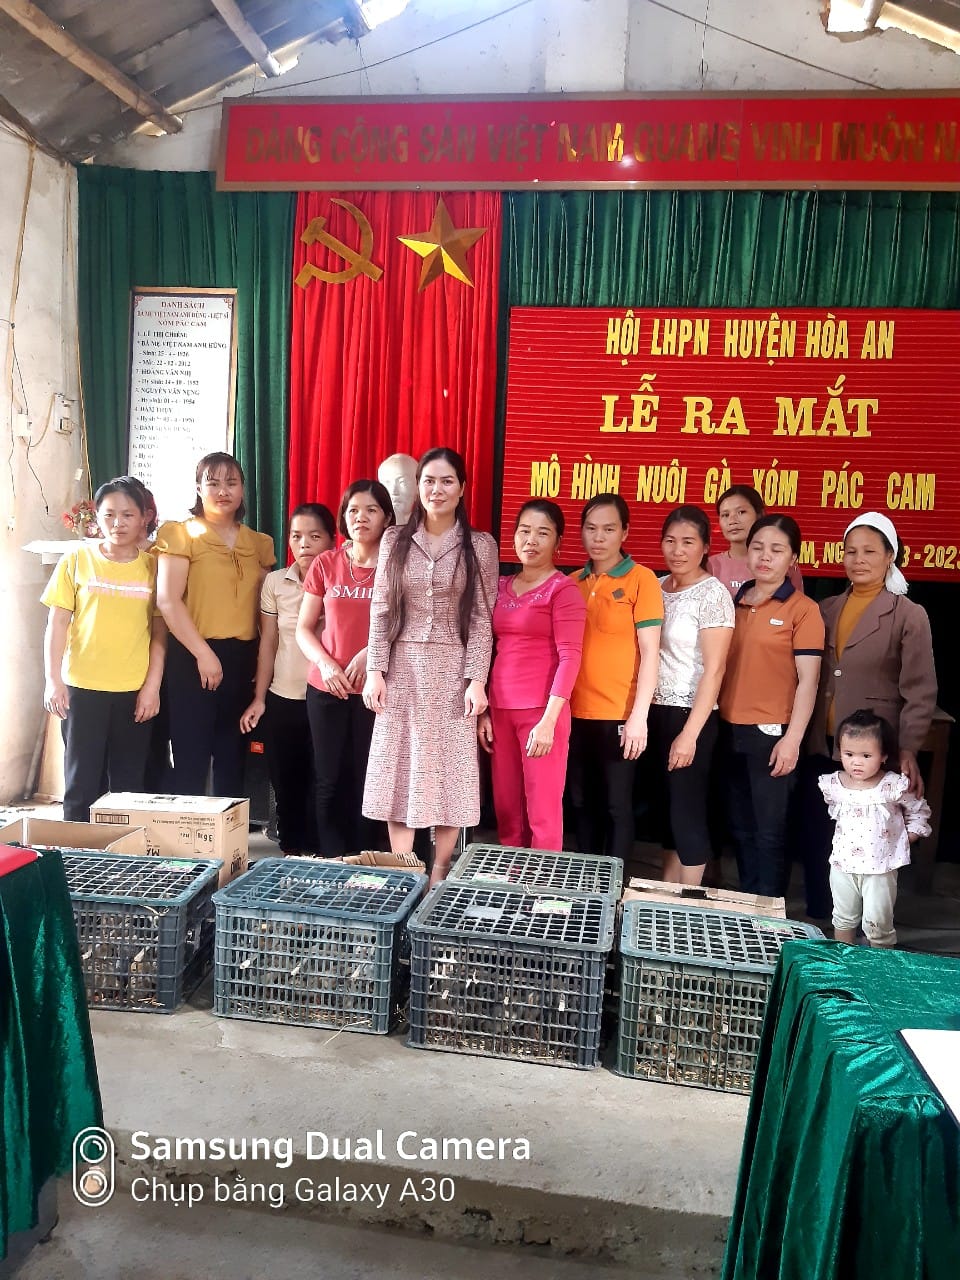 Hội LHPN huyện Hòa An tổ chức ra mắt mô hình “chăn nuôi gà” tại xóm Pác Cam